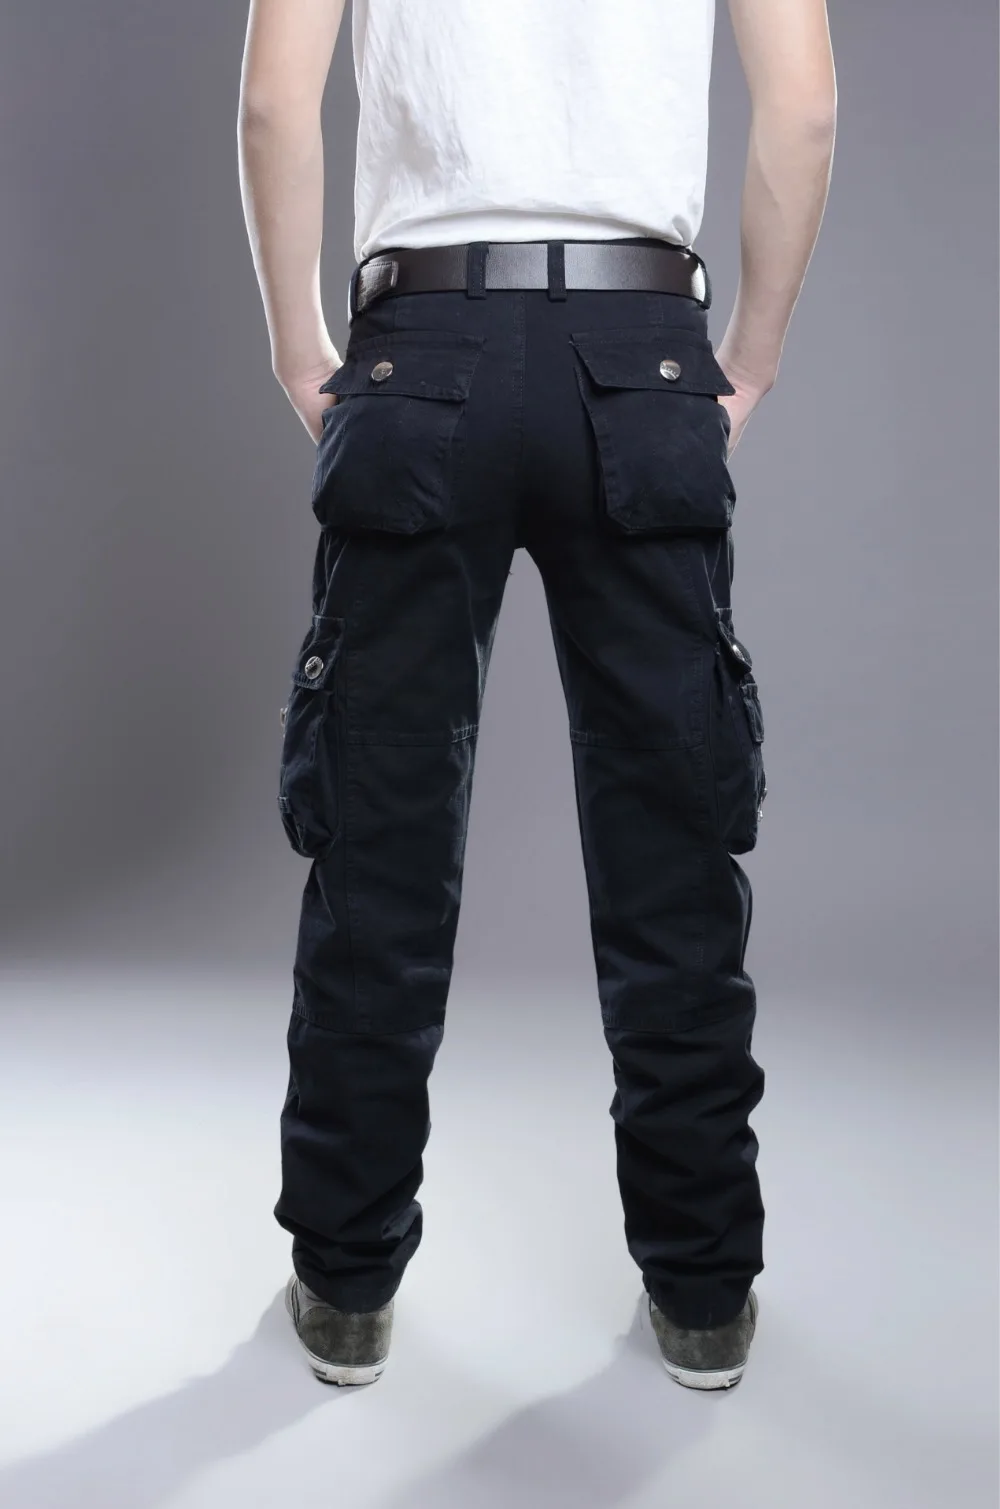 MIXCUBIC стиральная Военная униформа брюки для мужчин износостойкие Брюки Карго Для мужчин комбинезоны мульти-карман комбинезоны для мужчин Размер 28-38